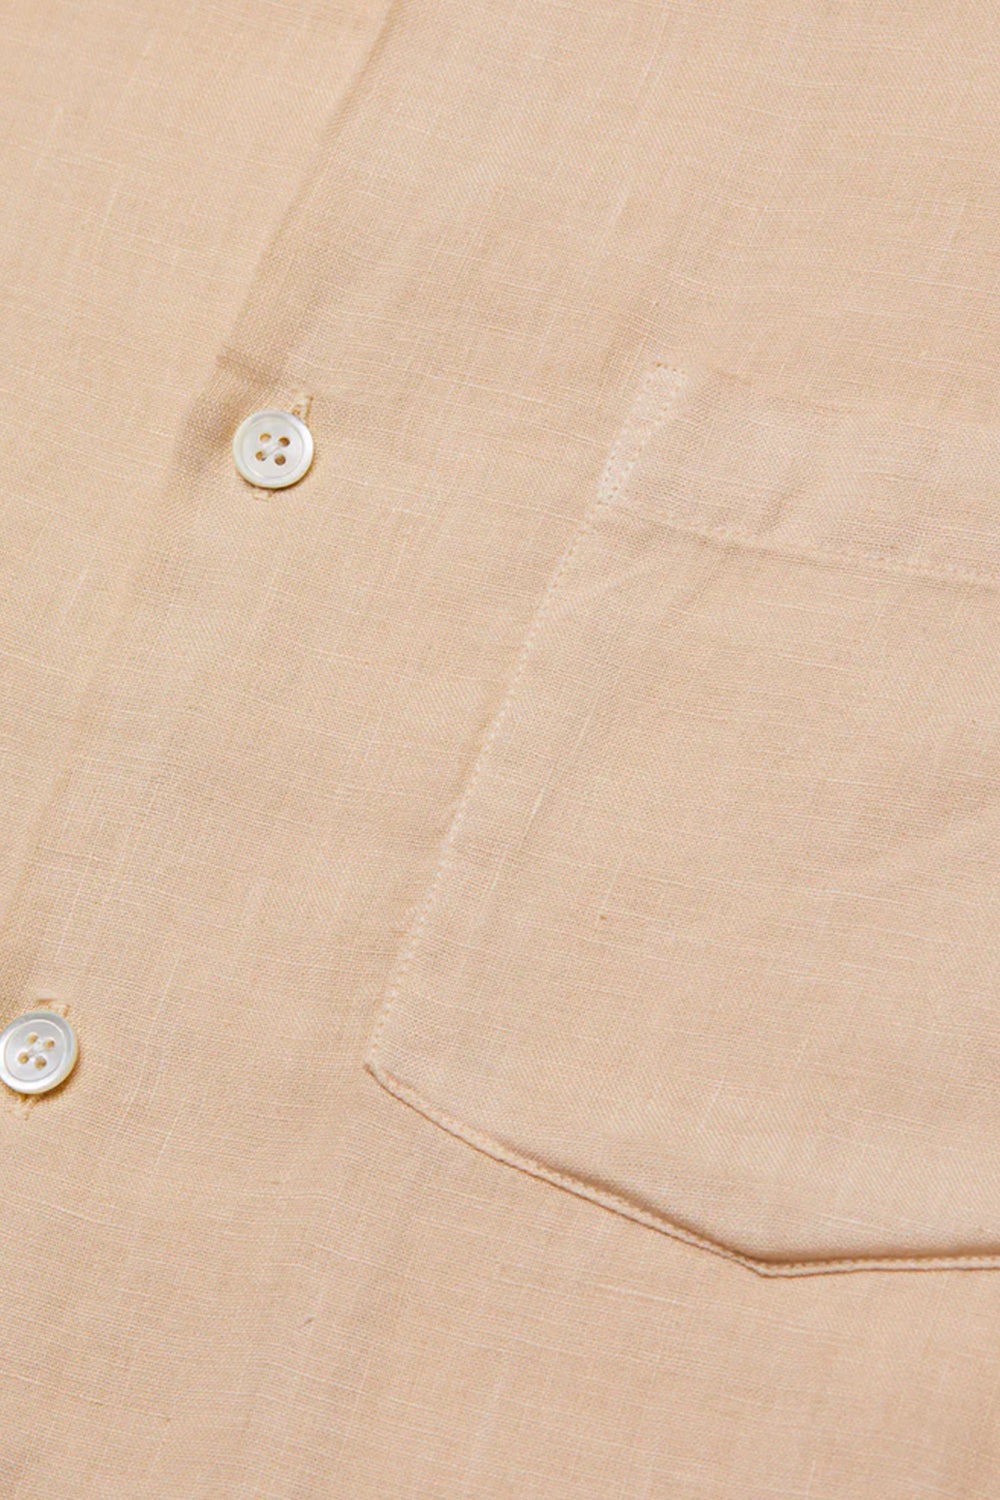 Chemise à manches courtes en flanelle portugaise Folclore 3 (orange brique et blanc)